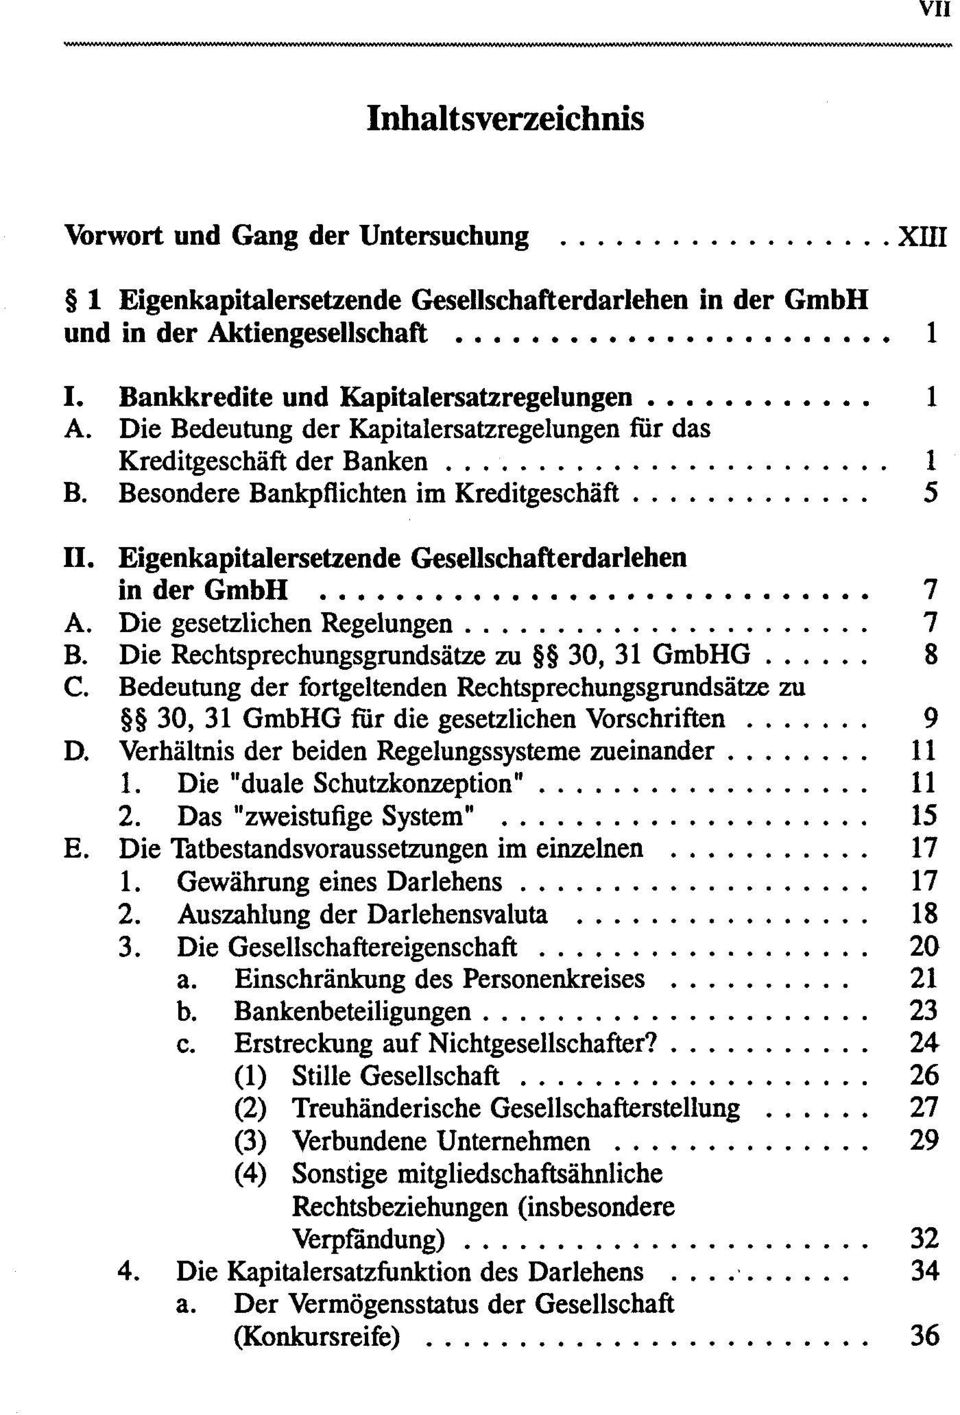 Eigenkapitalersetzende Gesellschafterdarlehen in der GmbH 7 A. Die gesetzlichen Regelungen 7 B. Die Rechtsprechungsgrundsätze zu 30, 31 GmbHG 8 C.